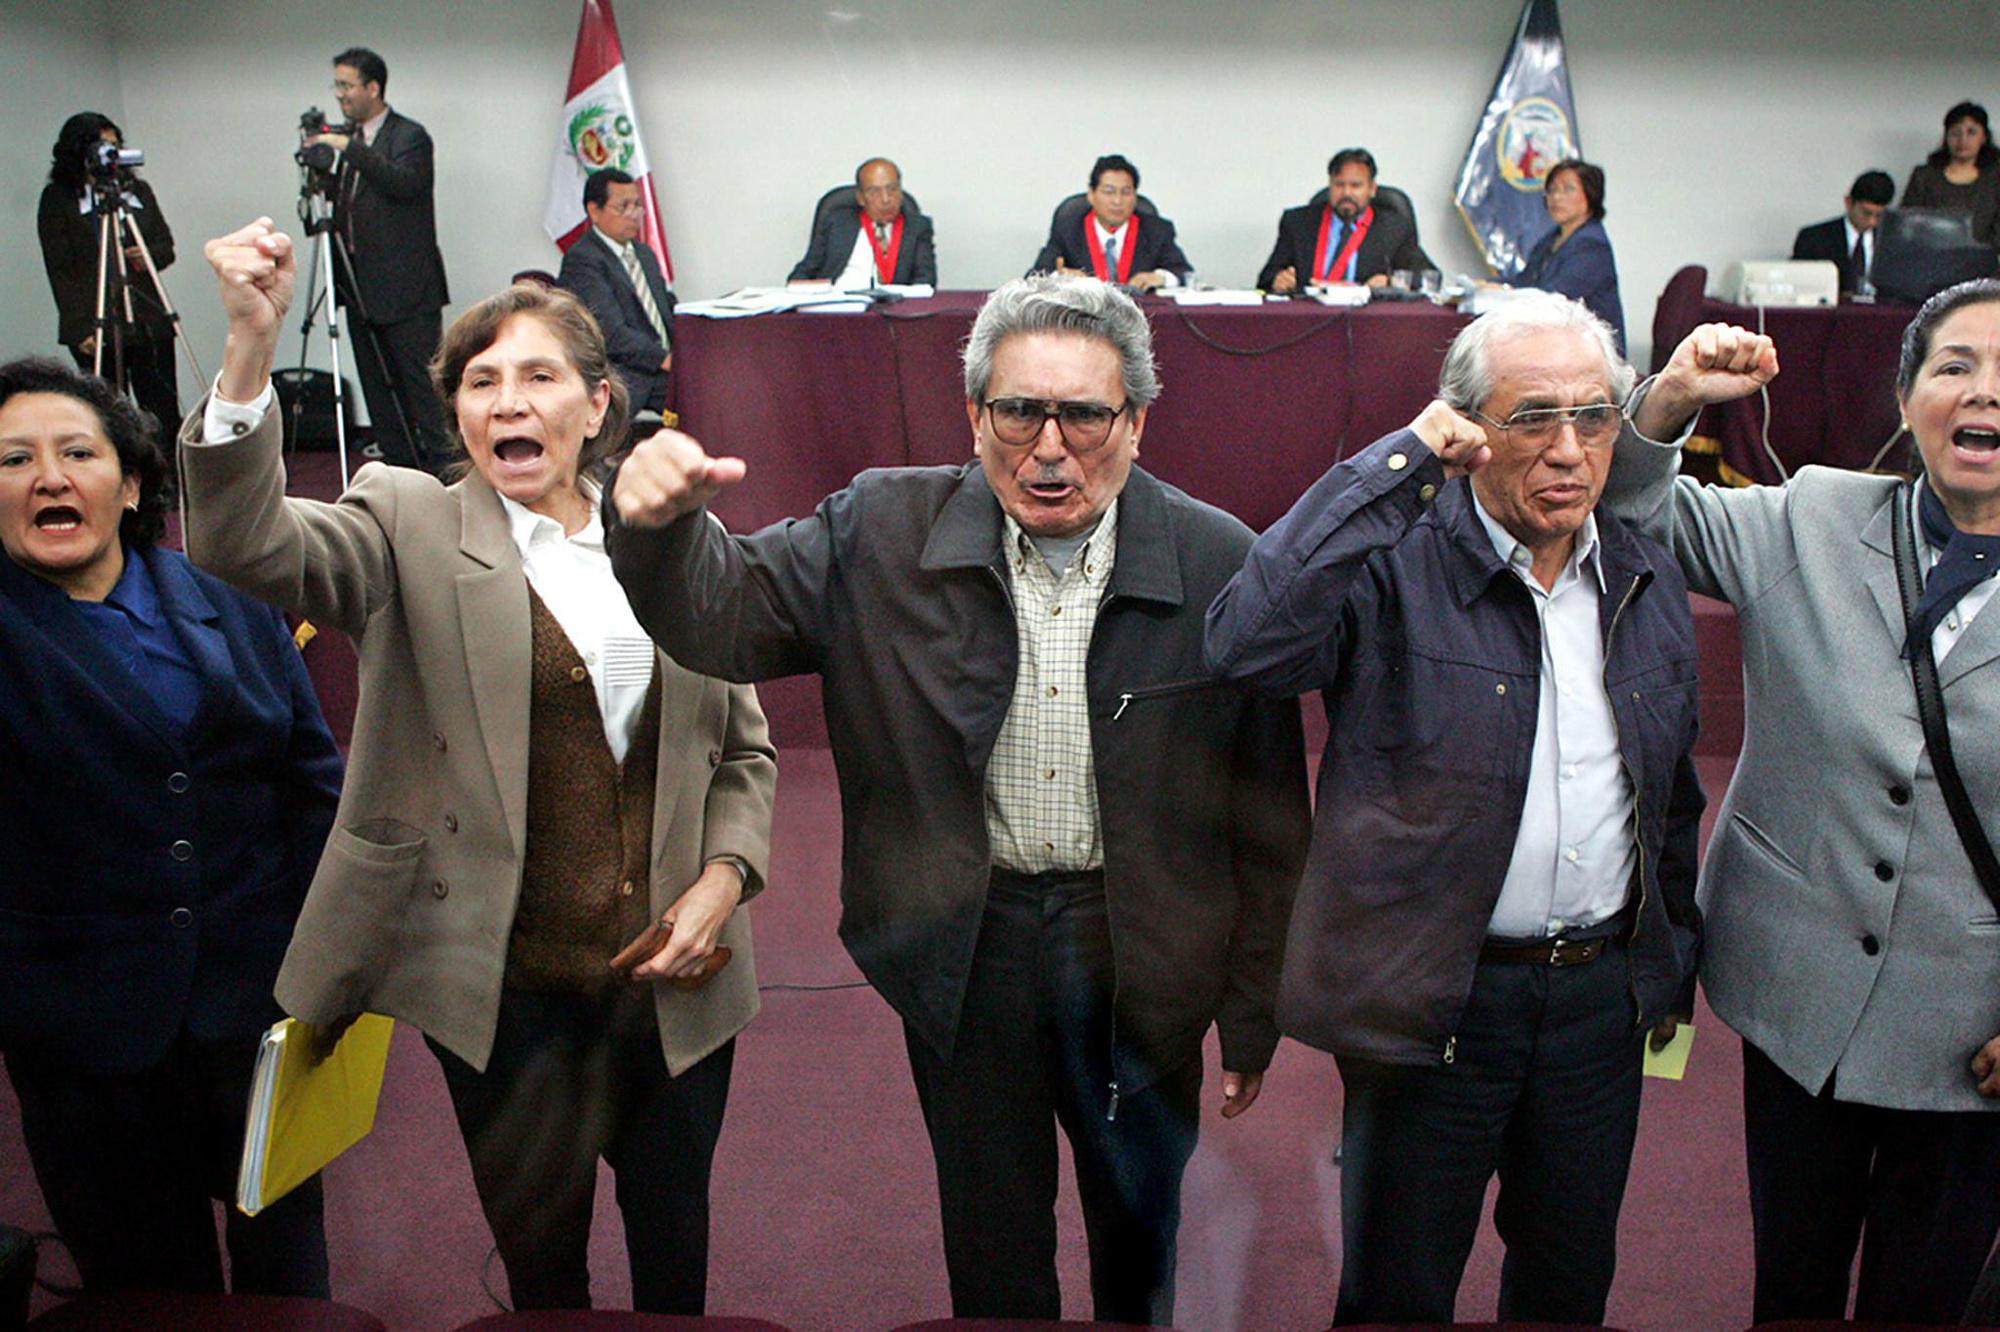 De gevangen leiding van Lichtend Pad in 2004, met centraal Guzman en links van hem zijn latere echtgenote Elena Iparraguirre